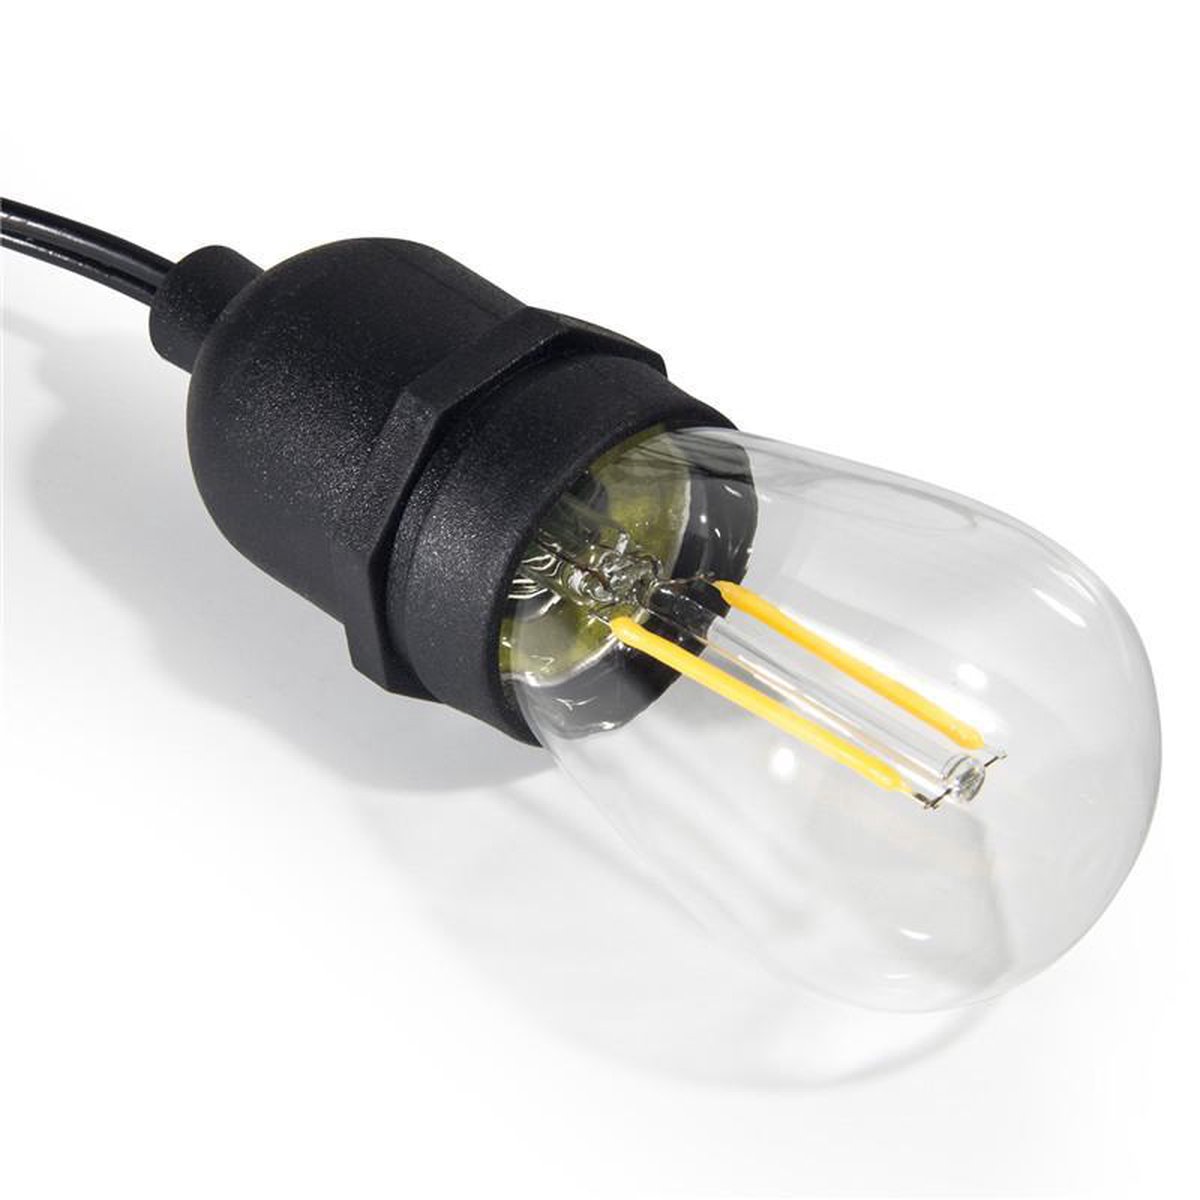 BG4U - Retro LED Verlichting Kabel Waterdicht Compleet | Retro Prikkabel...  | bol.com